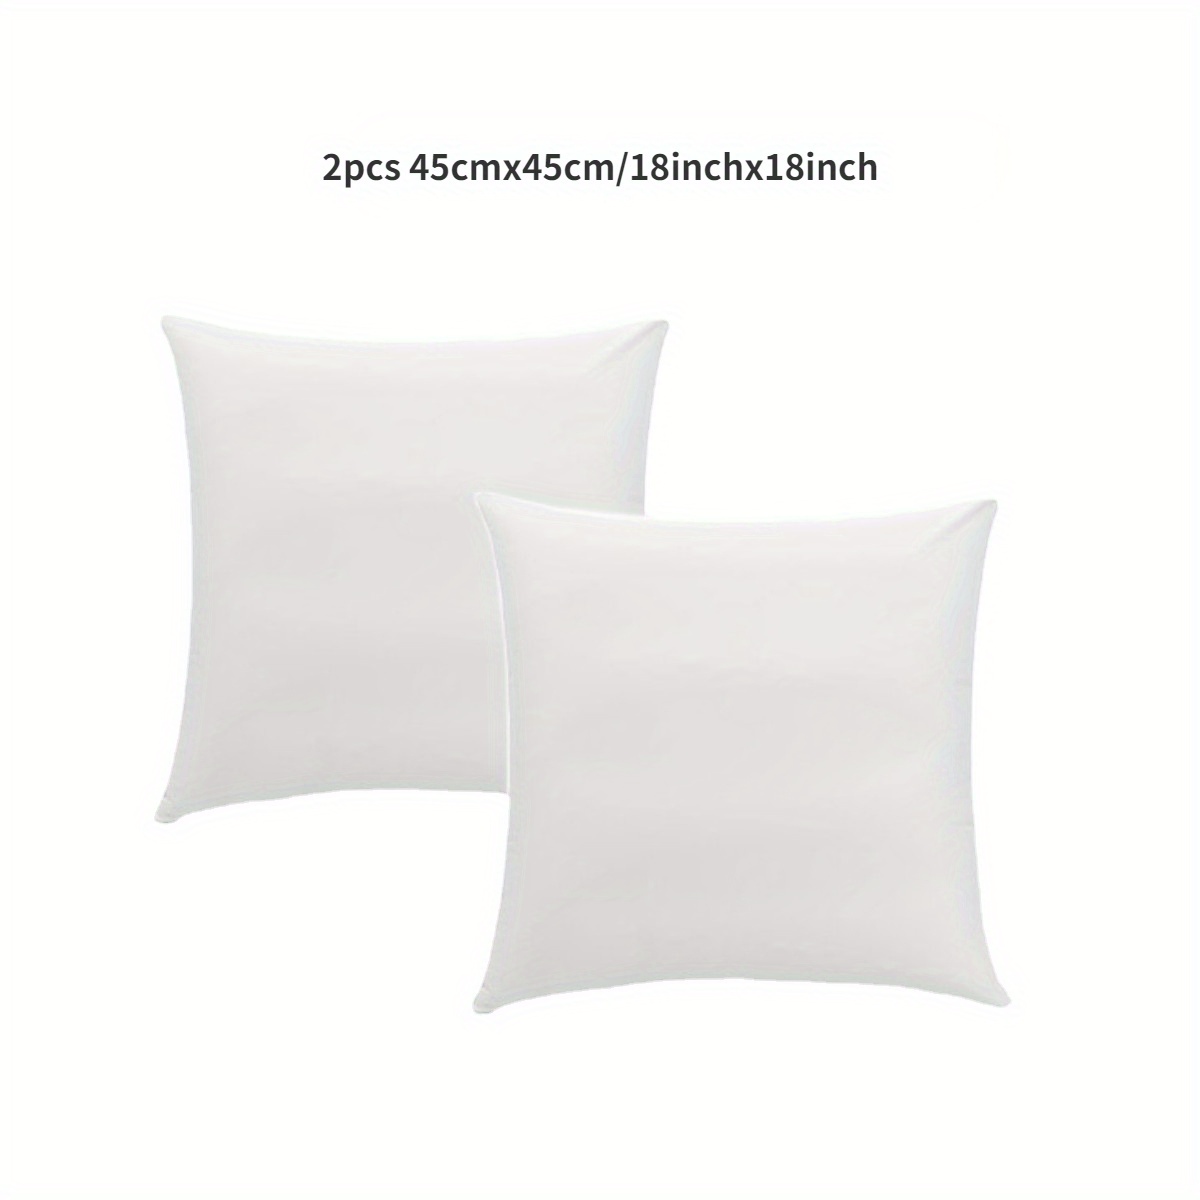 Pillow Insert 18 Inch 45cmx45cm Outdoor Indoor Pillow Form